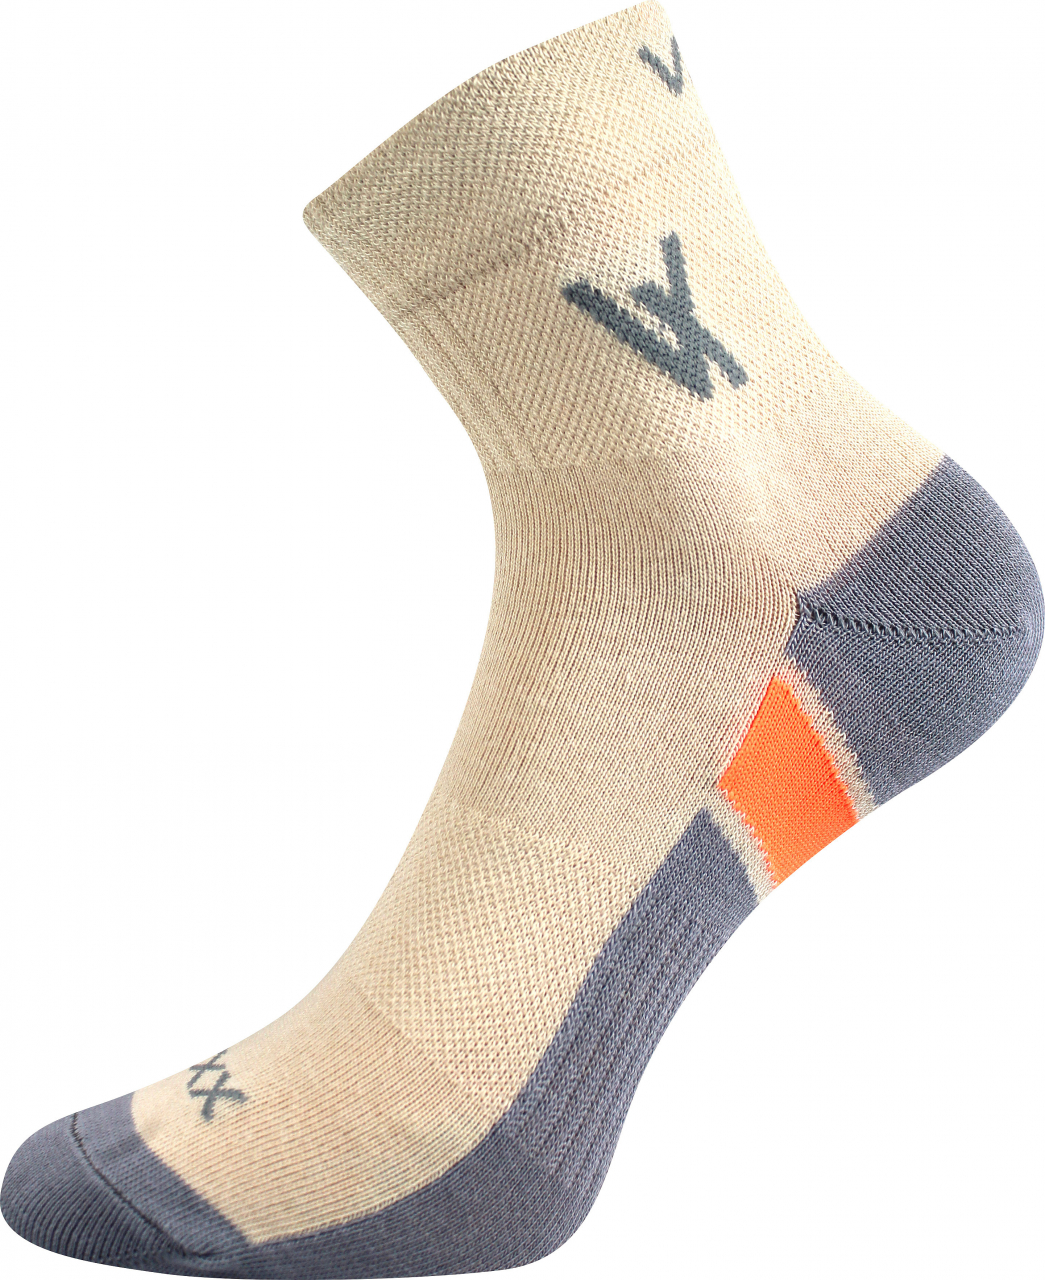 Ponožky sportovní Voxx Neo - béžové, 43-46